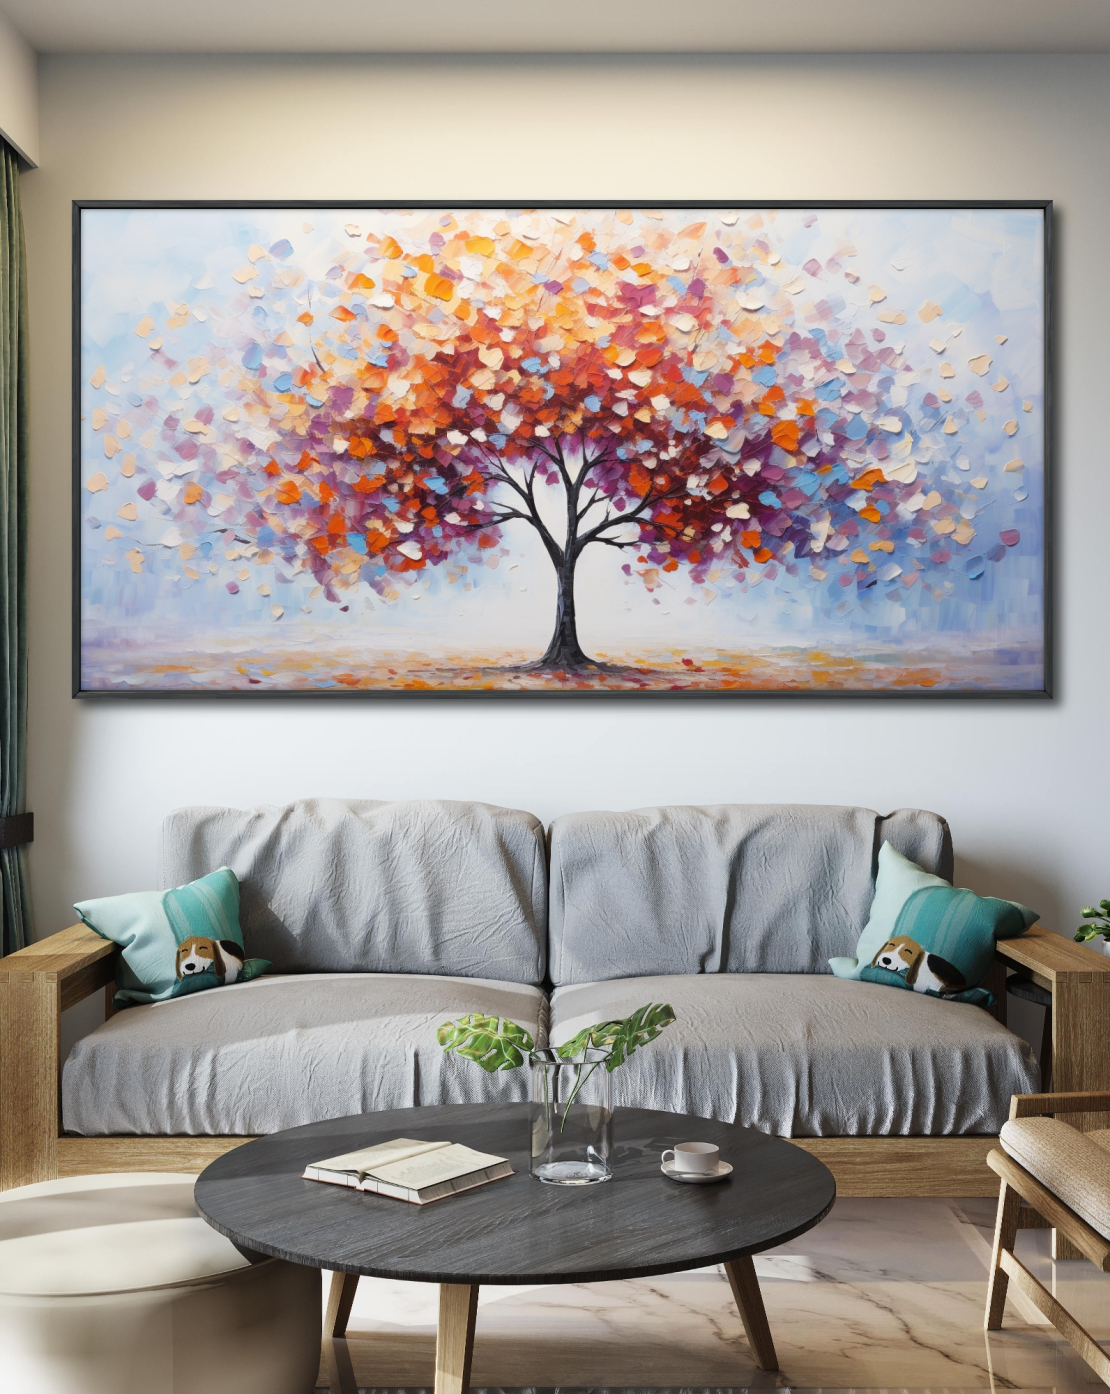 תמונת קנבס צבעונית לסלון בסגנון עצים 